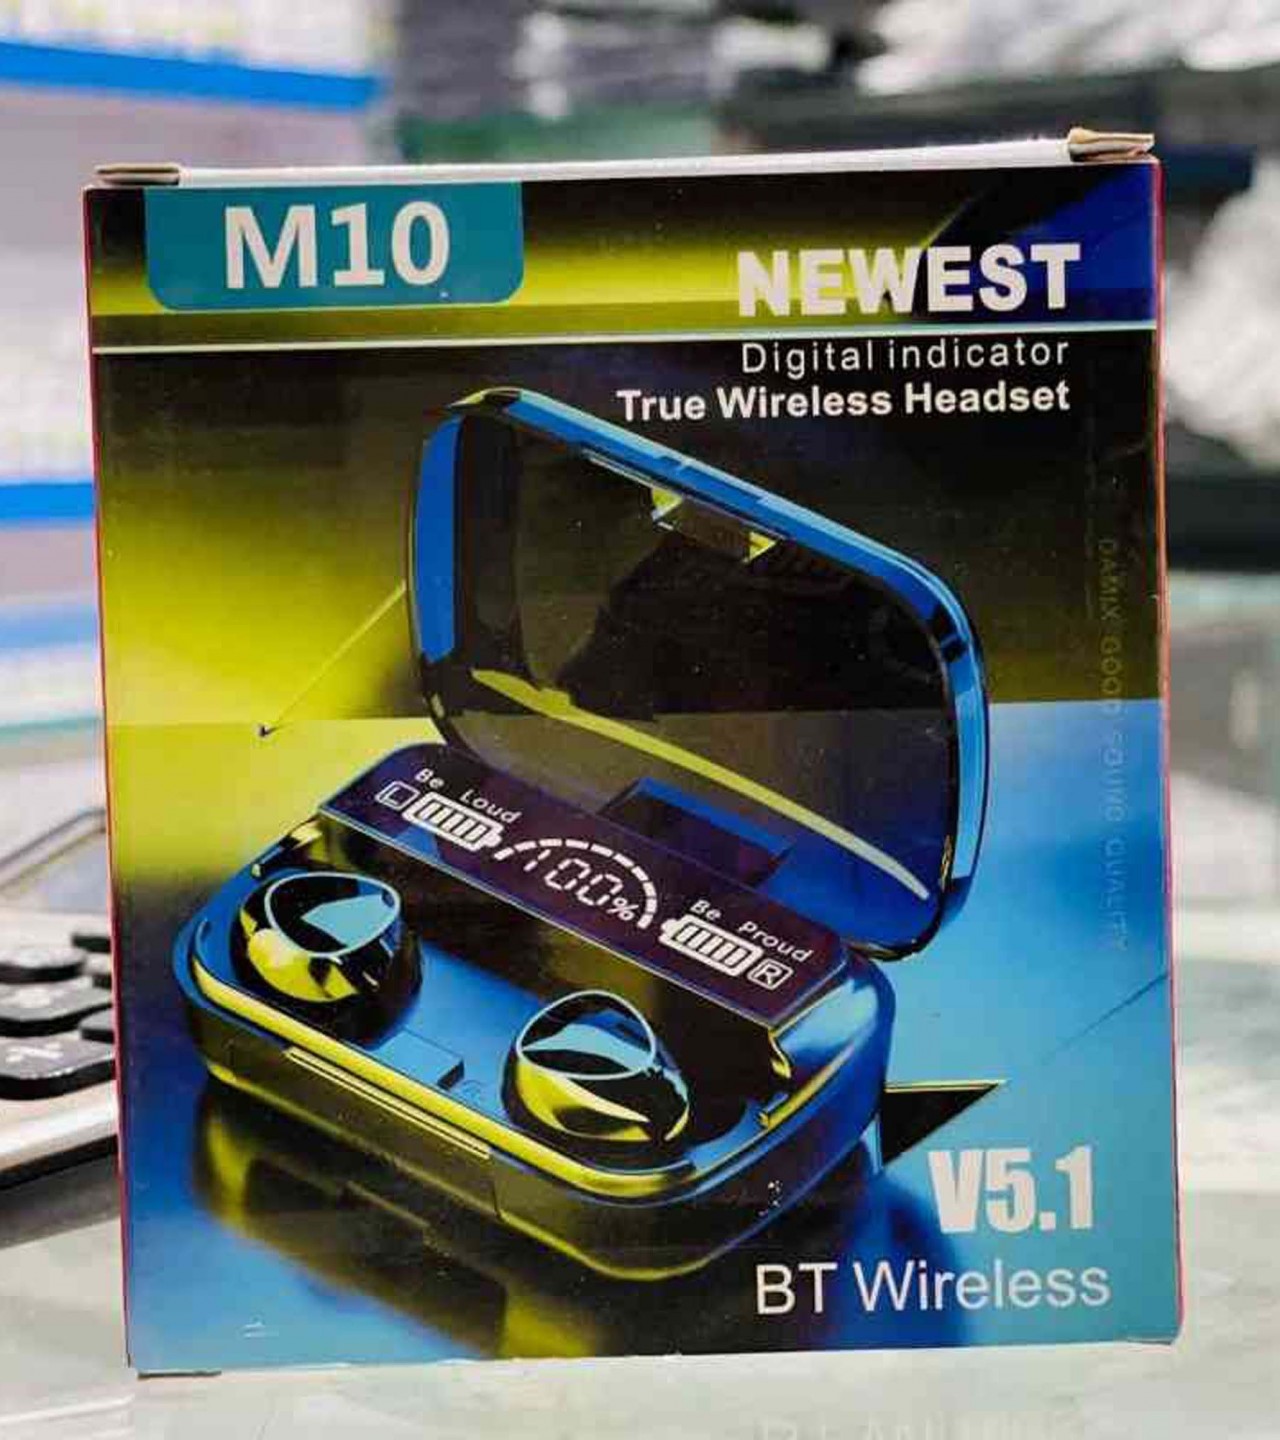 M10 TWS Earbuds Bluetooth 5.1 Earphones